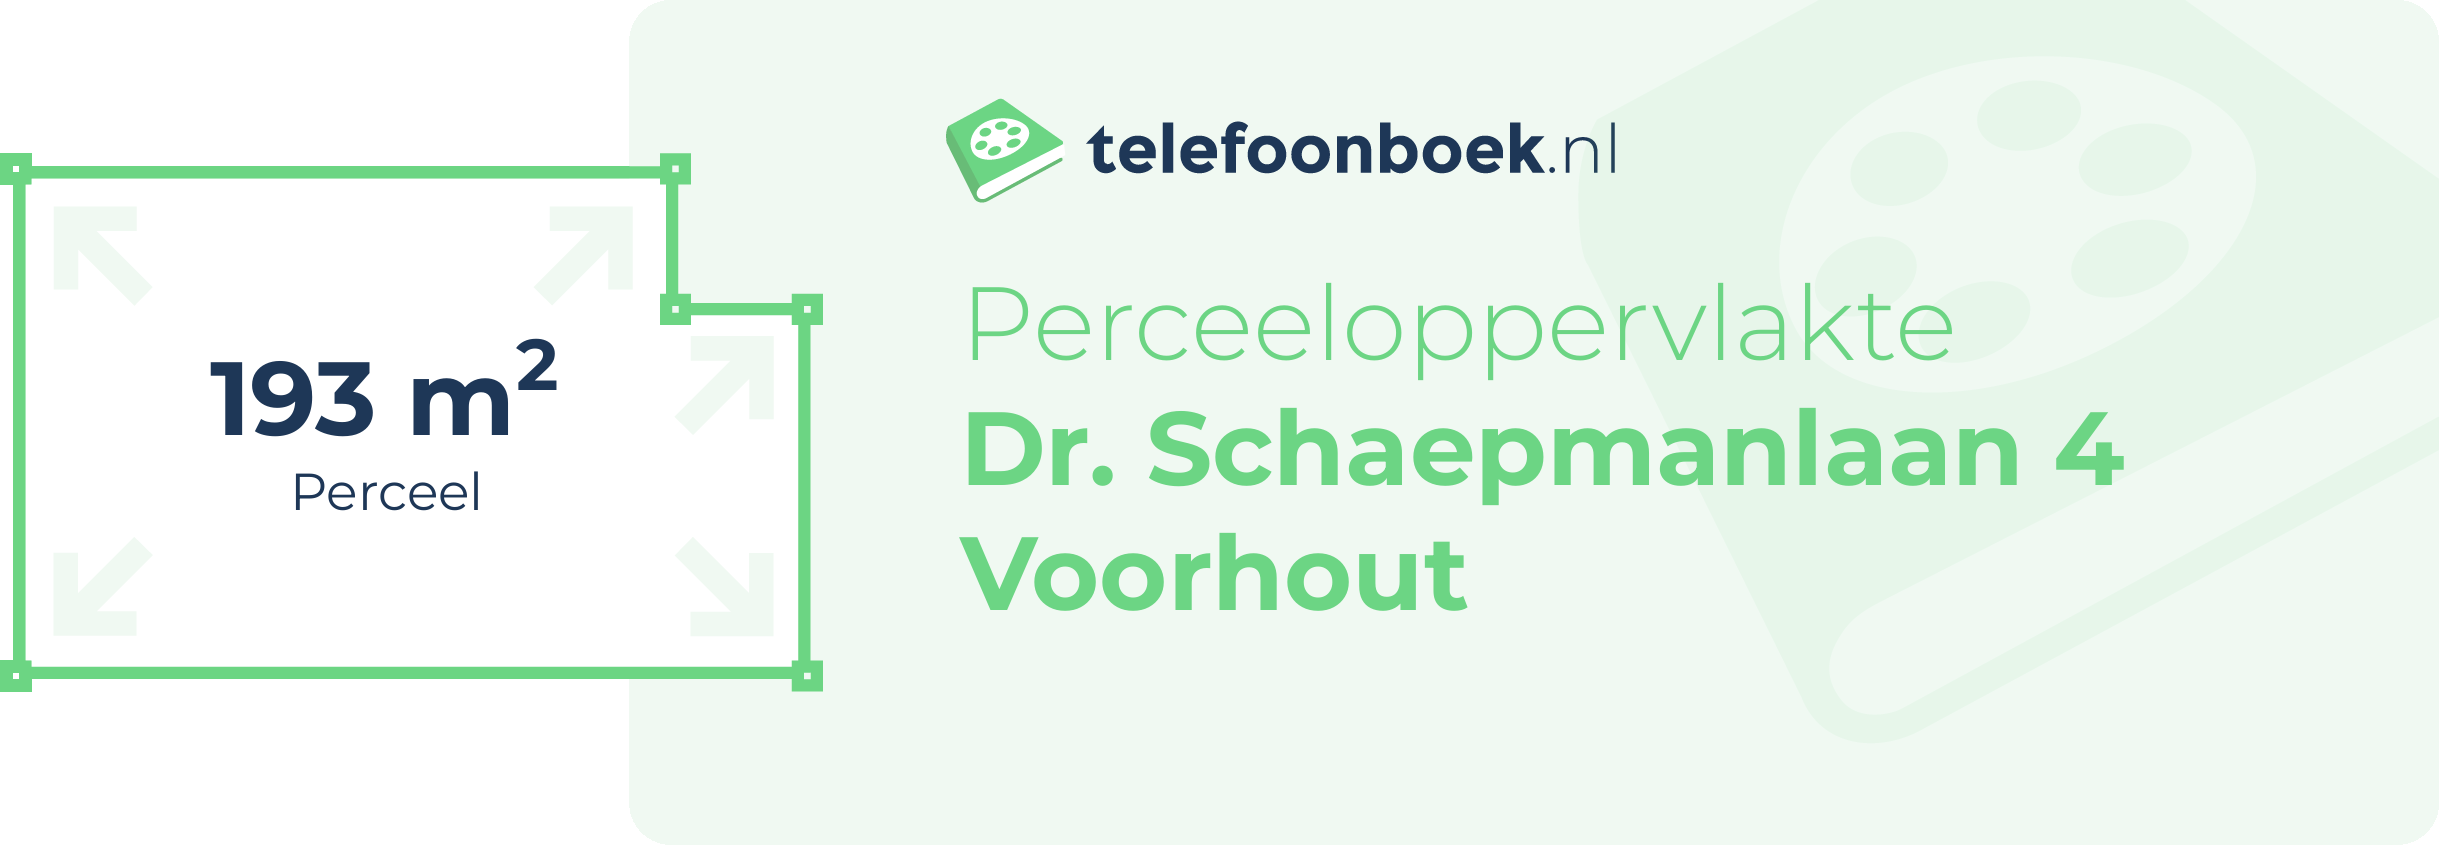 Perceeloppervlakte Dr. Schaepmanlaan 4 Voorhout